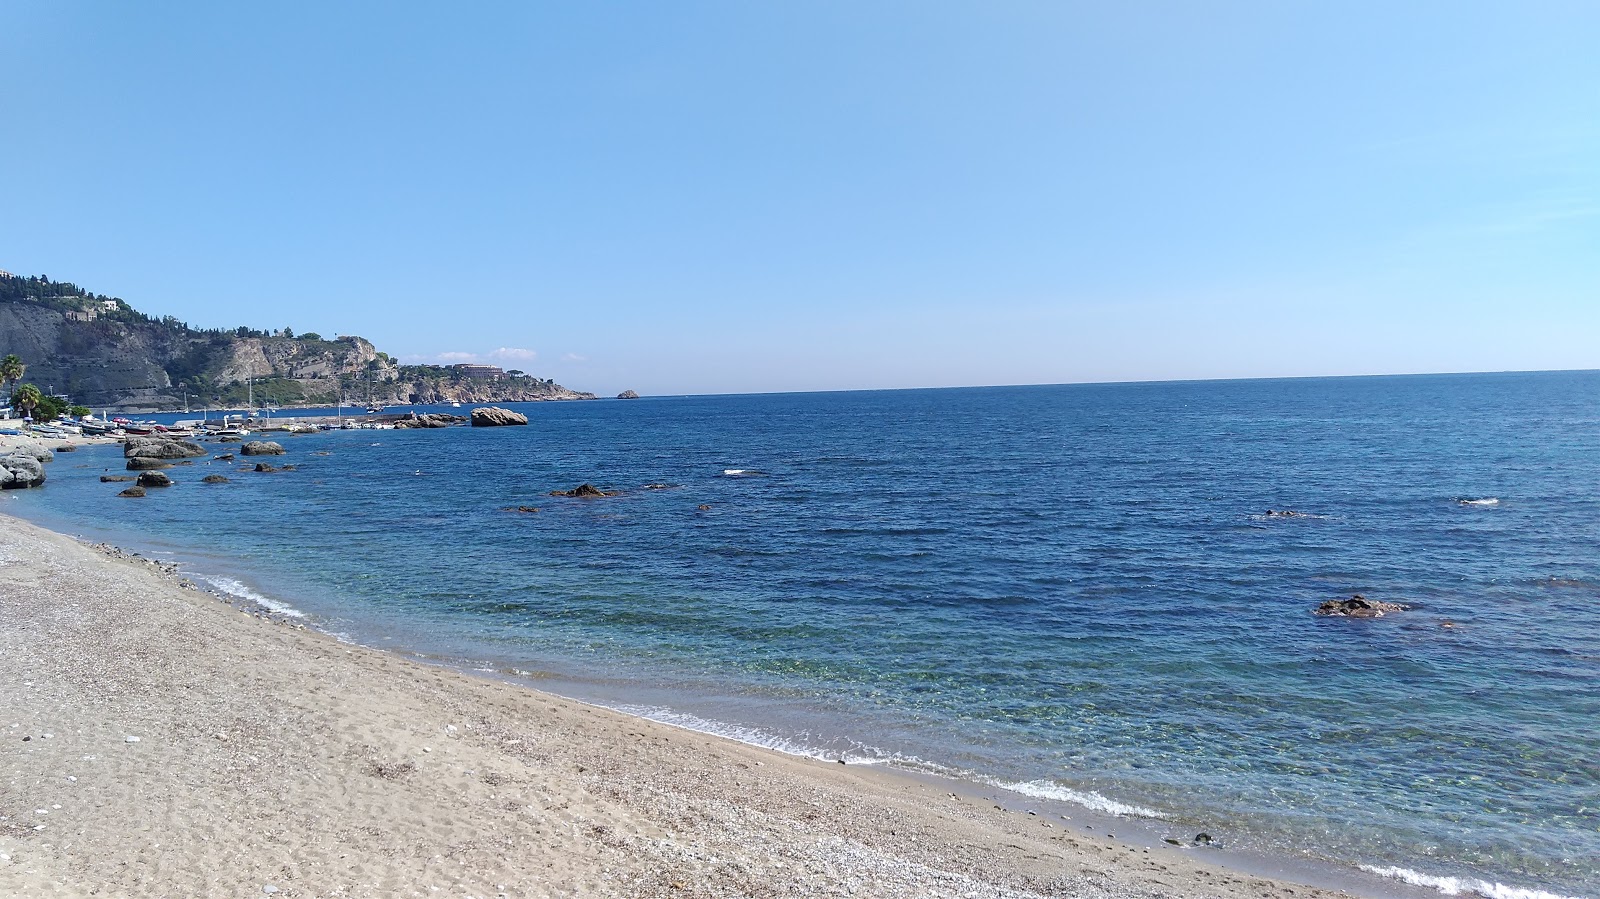 Spiaggia Giardini Naxos'in fotoğrafı siyah kum ve çakıl yüzey ile